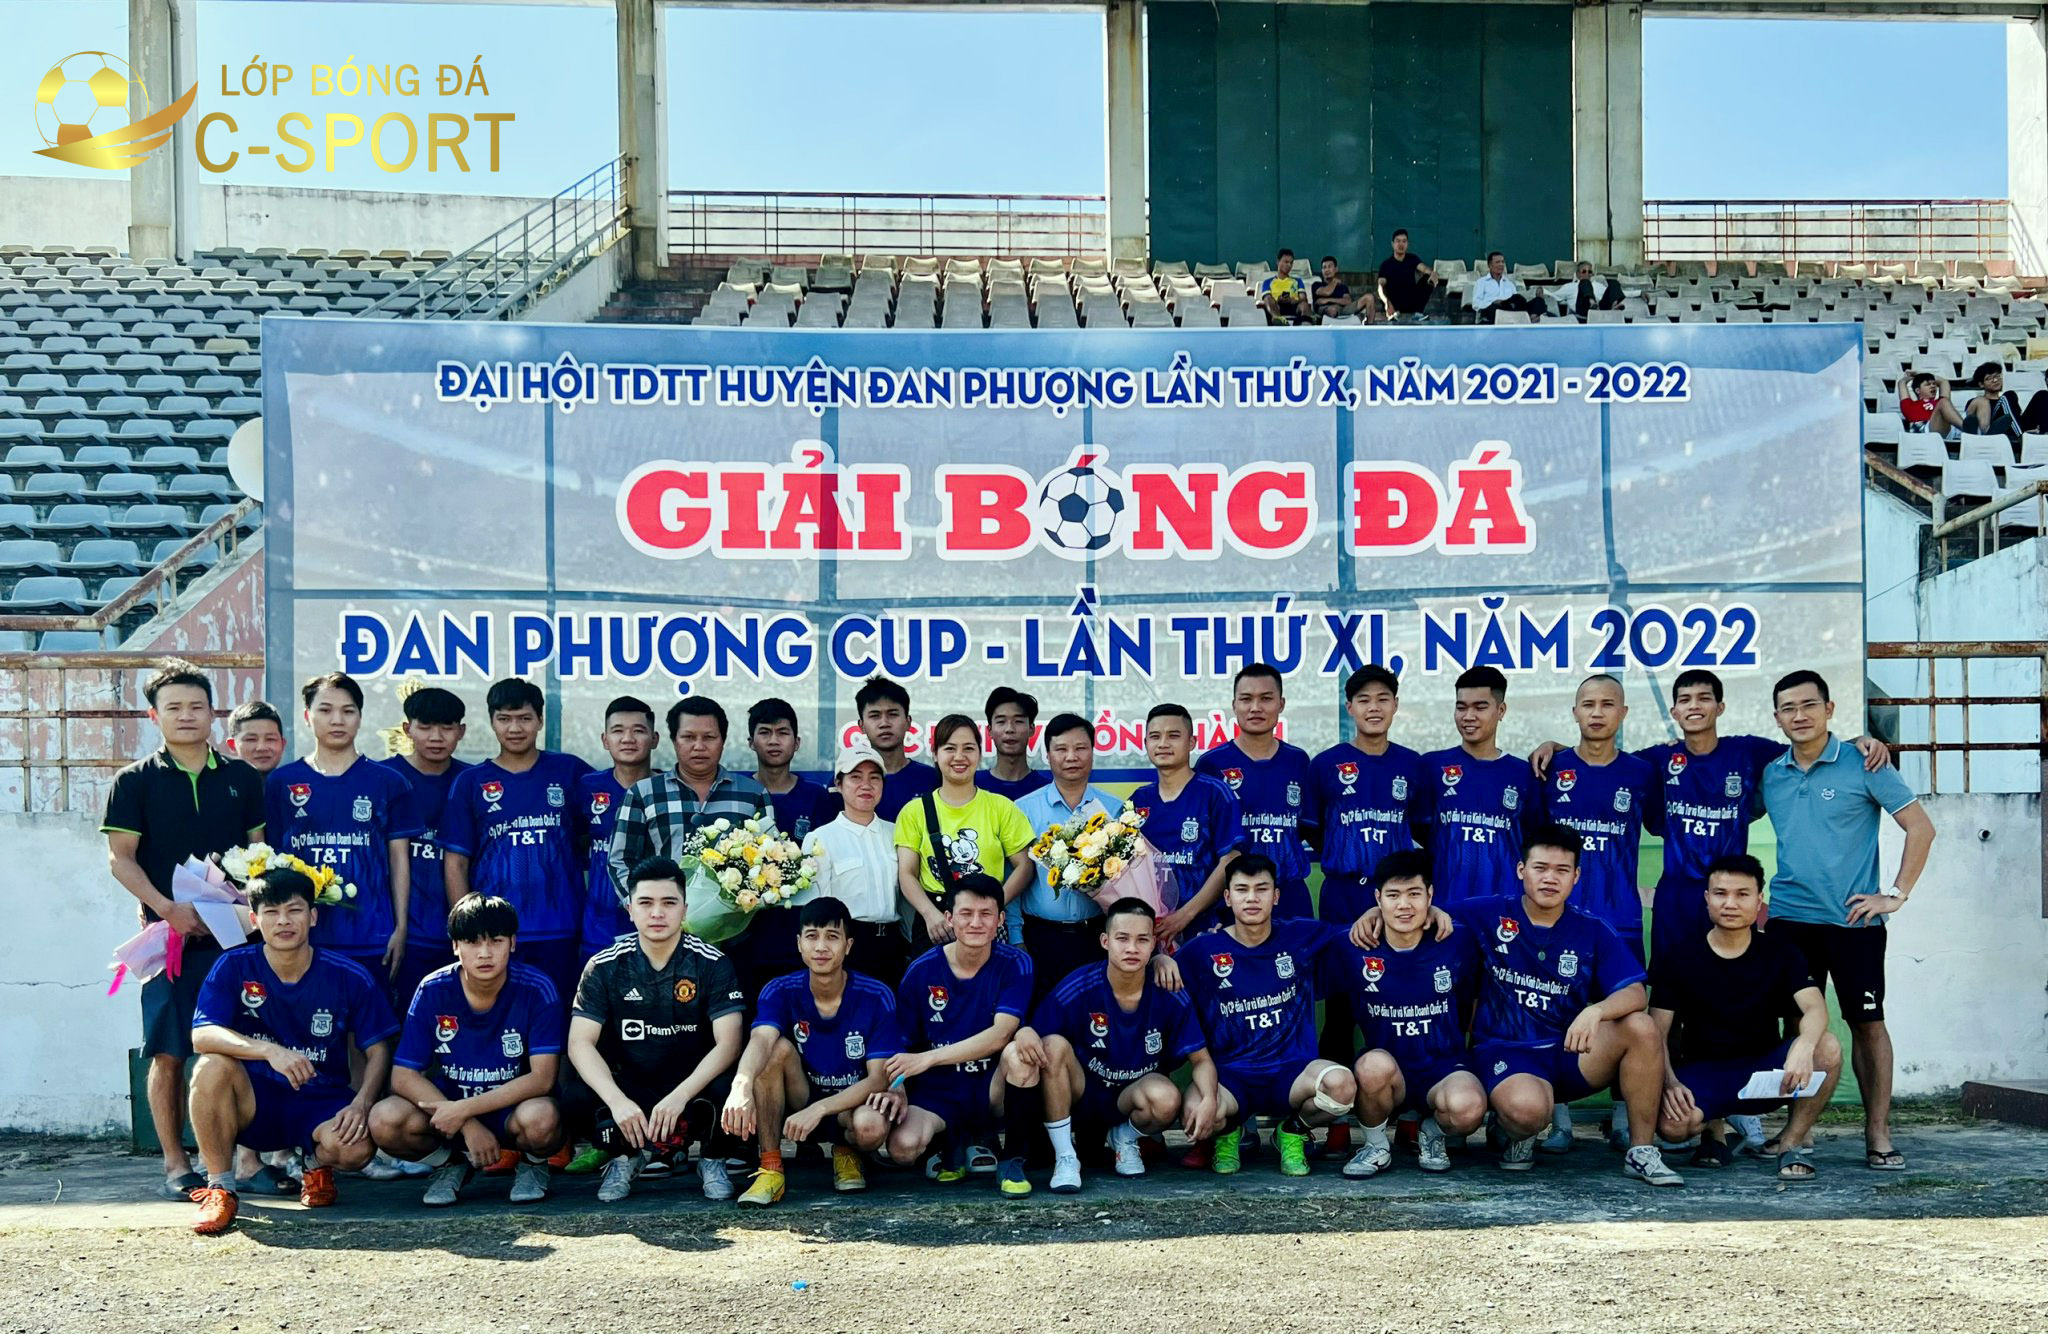 Học viên lớp học bóng đá người lớn C-Sport tham gia thi đấu tại các giải đấu trong thành phố Hà Nội